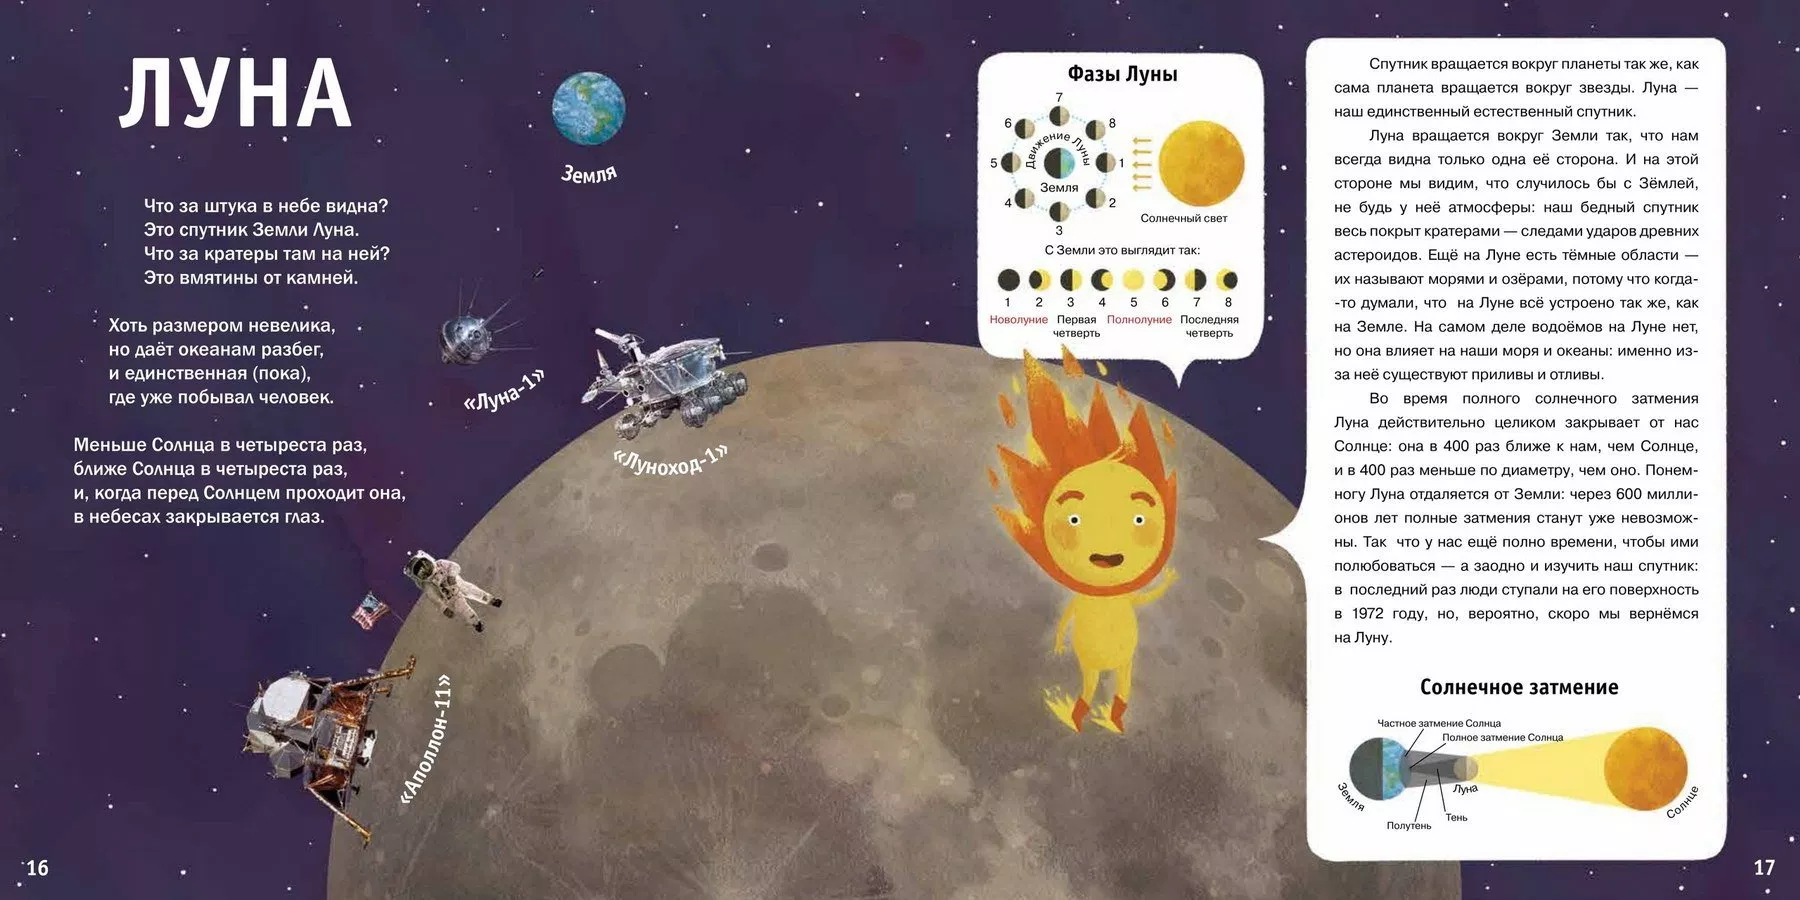 Стихотворение про планеты для детей. Стих про луну для детей. Стихи о космосе для детей. Стих про луну короткие для детей. Стихотворение про луну для детей.